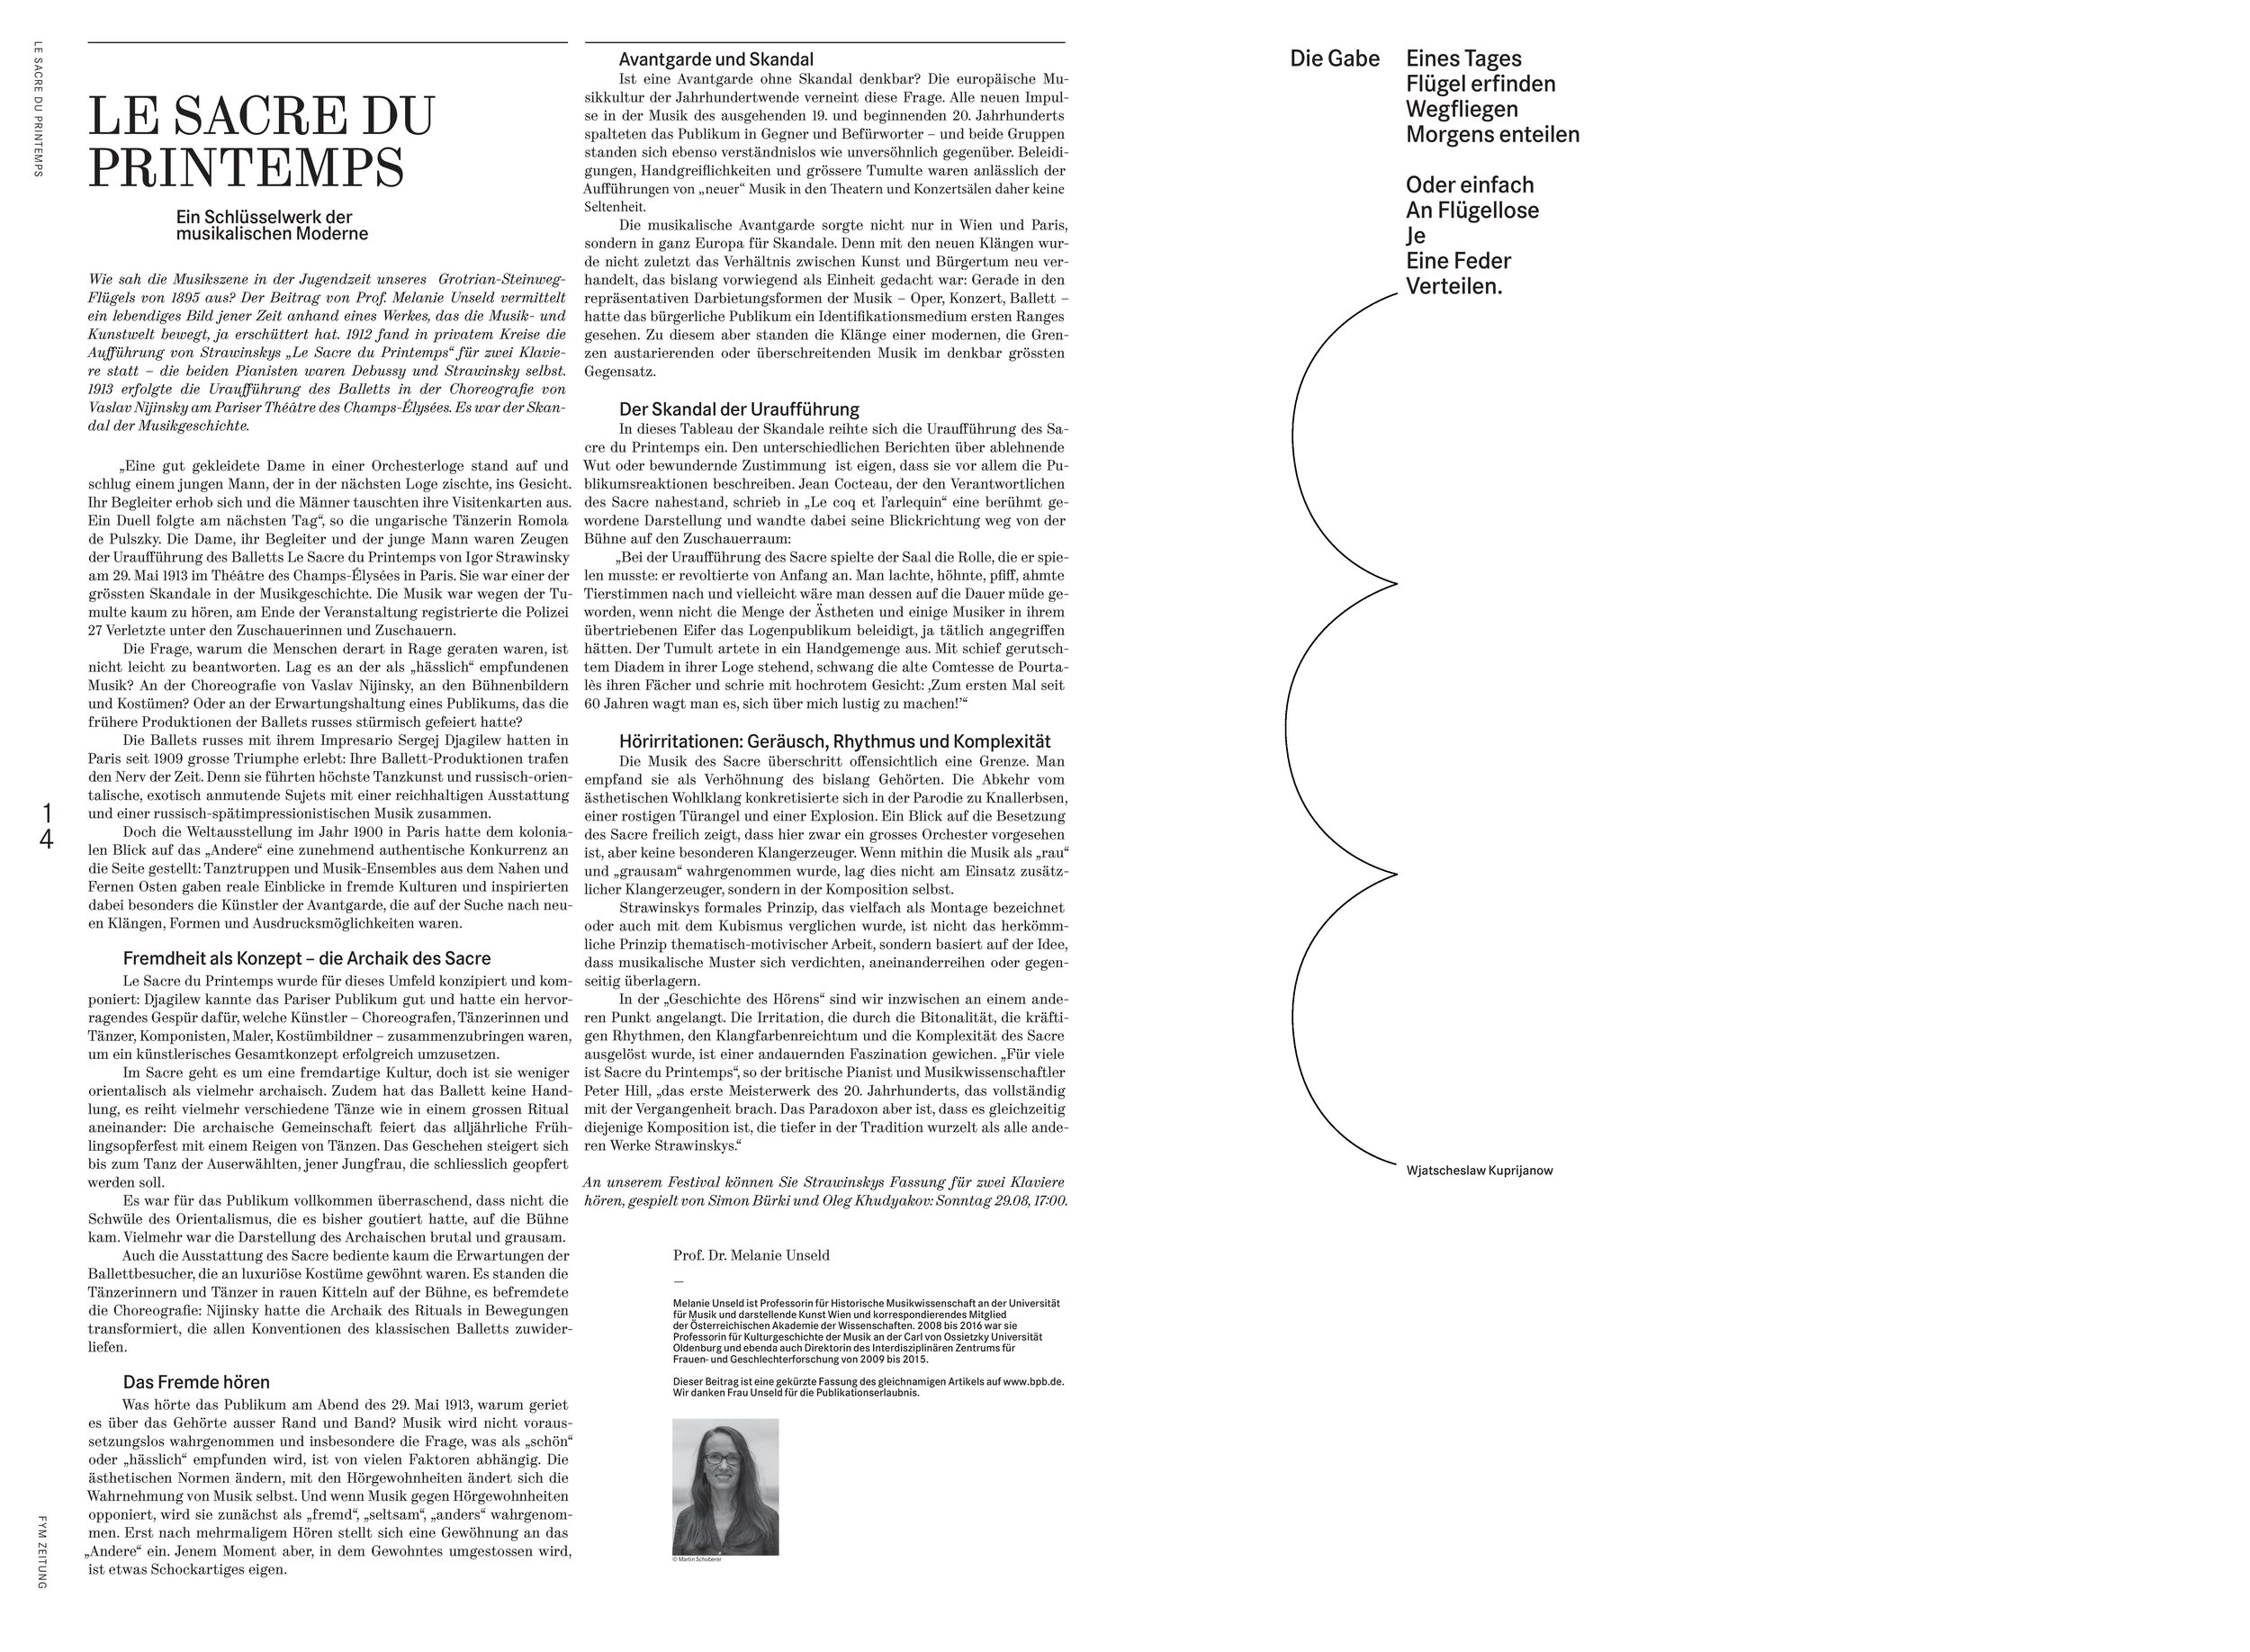 FYM Zeitung No2 Beflügelt - EinFestival für zwei Klaviere-page-008.jpg